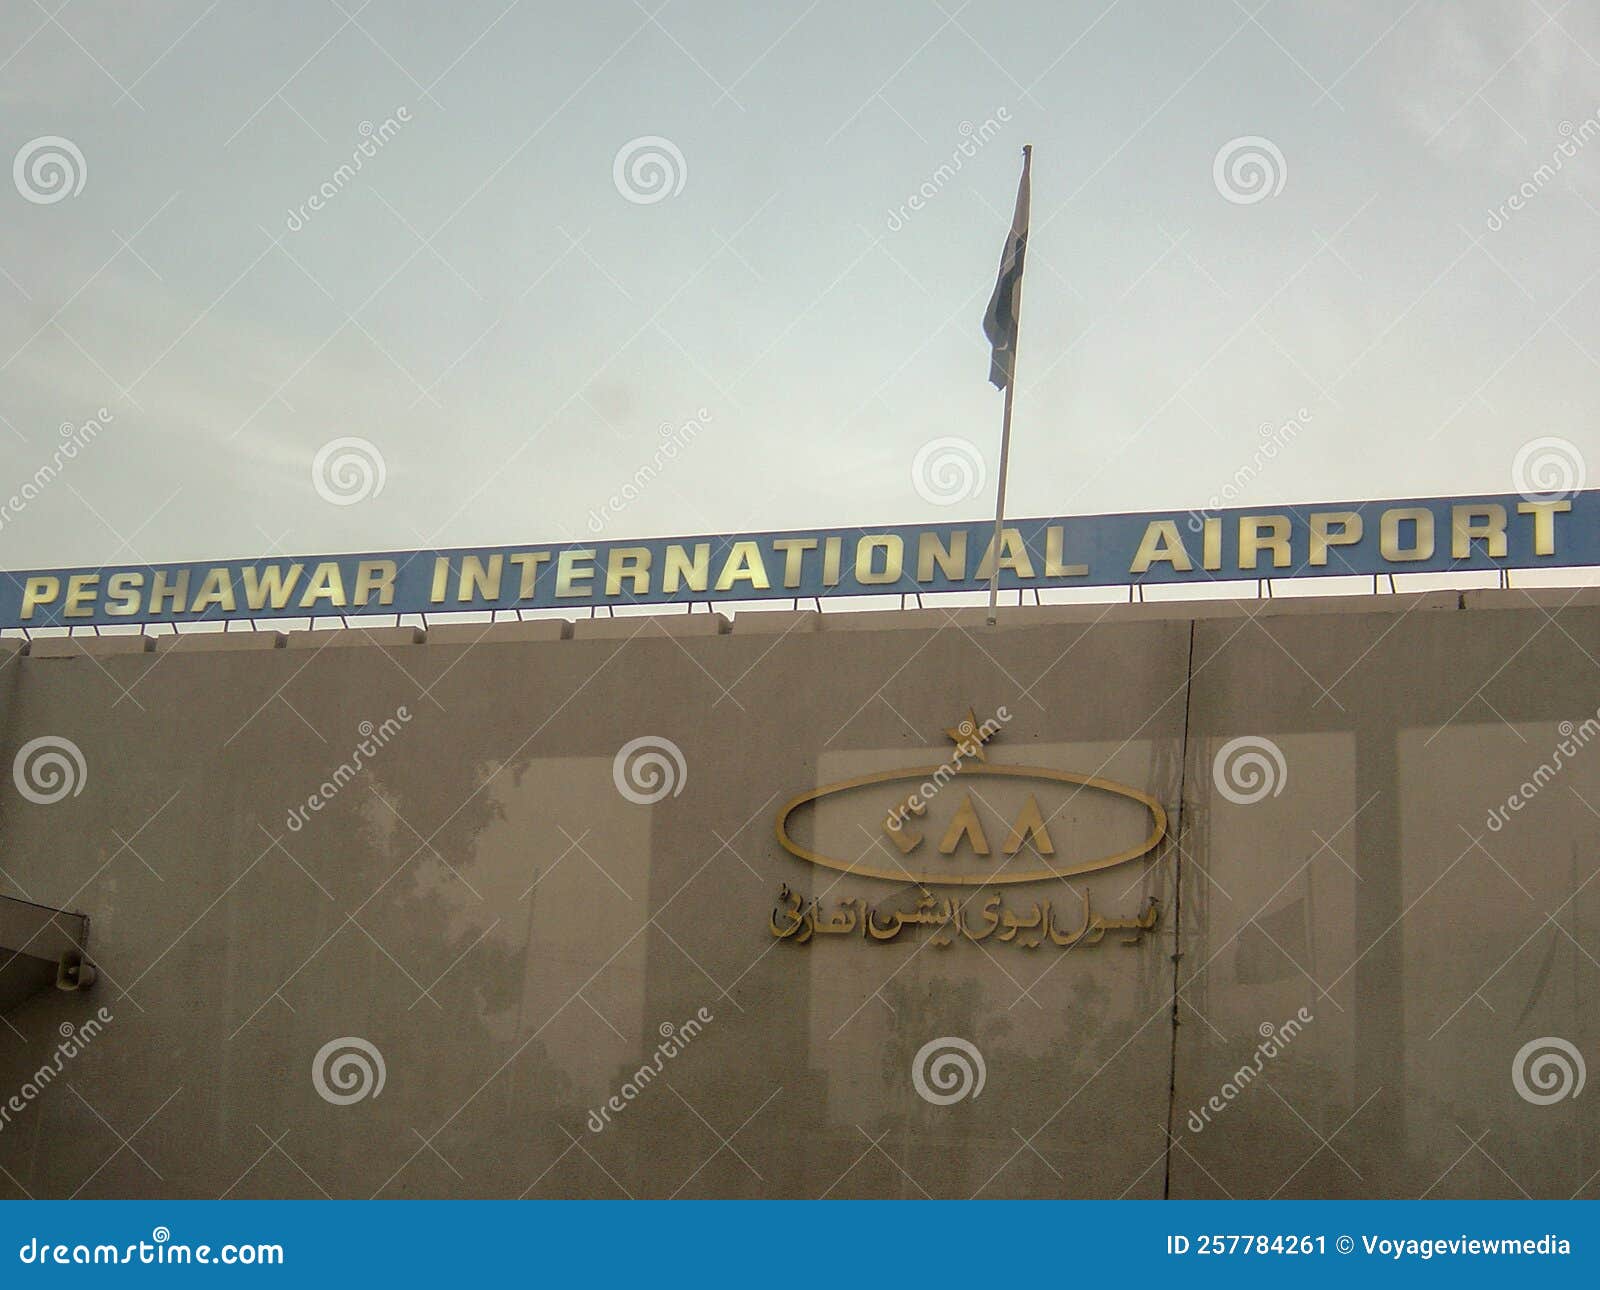 SIMARC – 巴基斯坦-费萨拉巴德国际机场 OPFA P3DV4.4+ – simFlight中国